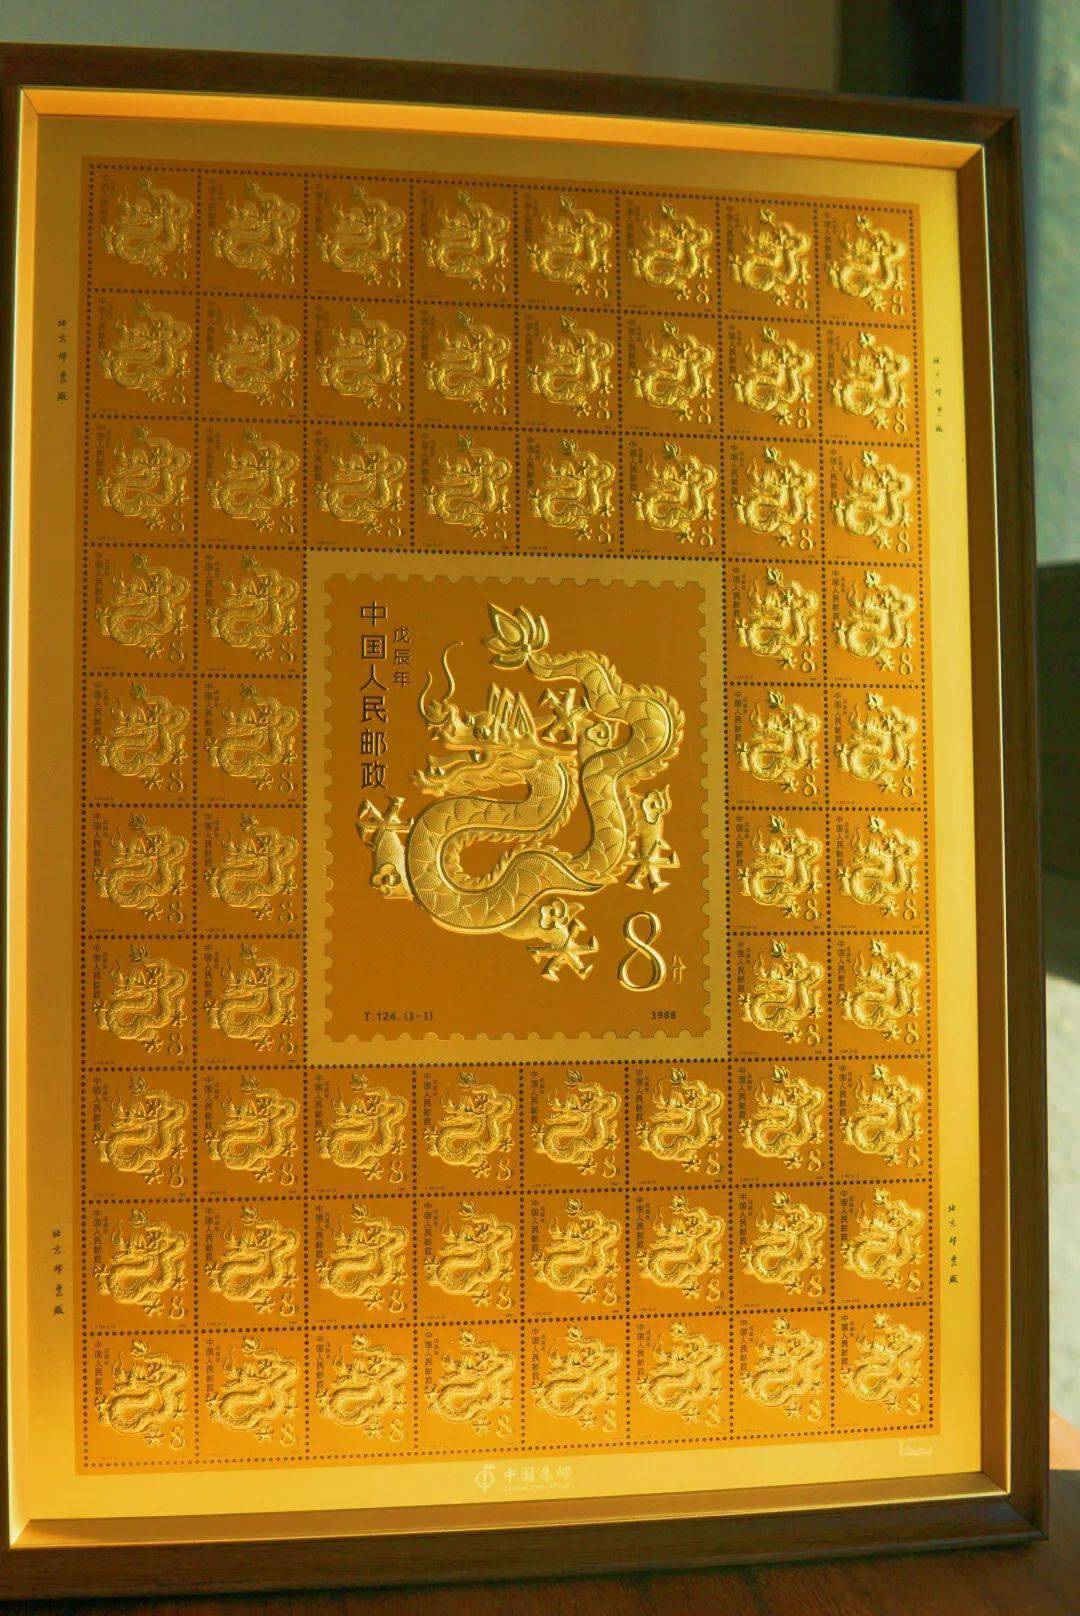 1988年邮票图片价格表图片